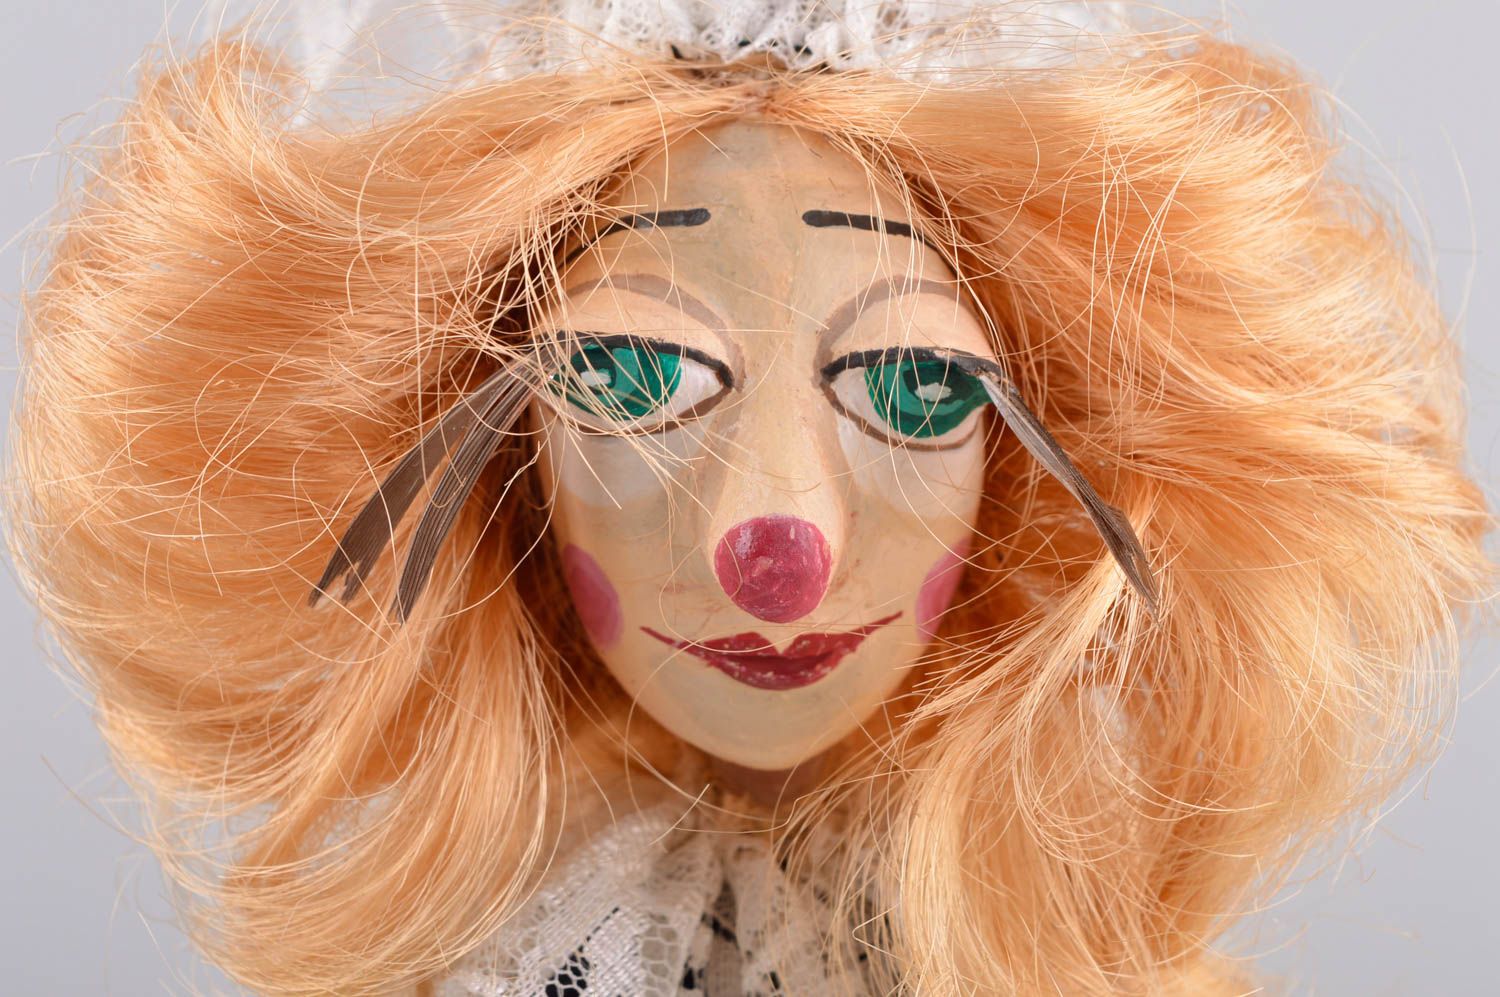 Puppe handgemacht Keramik Puppe Wohnung Deko Spielzeug Puppe Clown grell schön foto 5